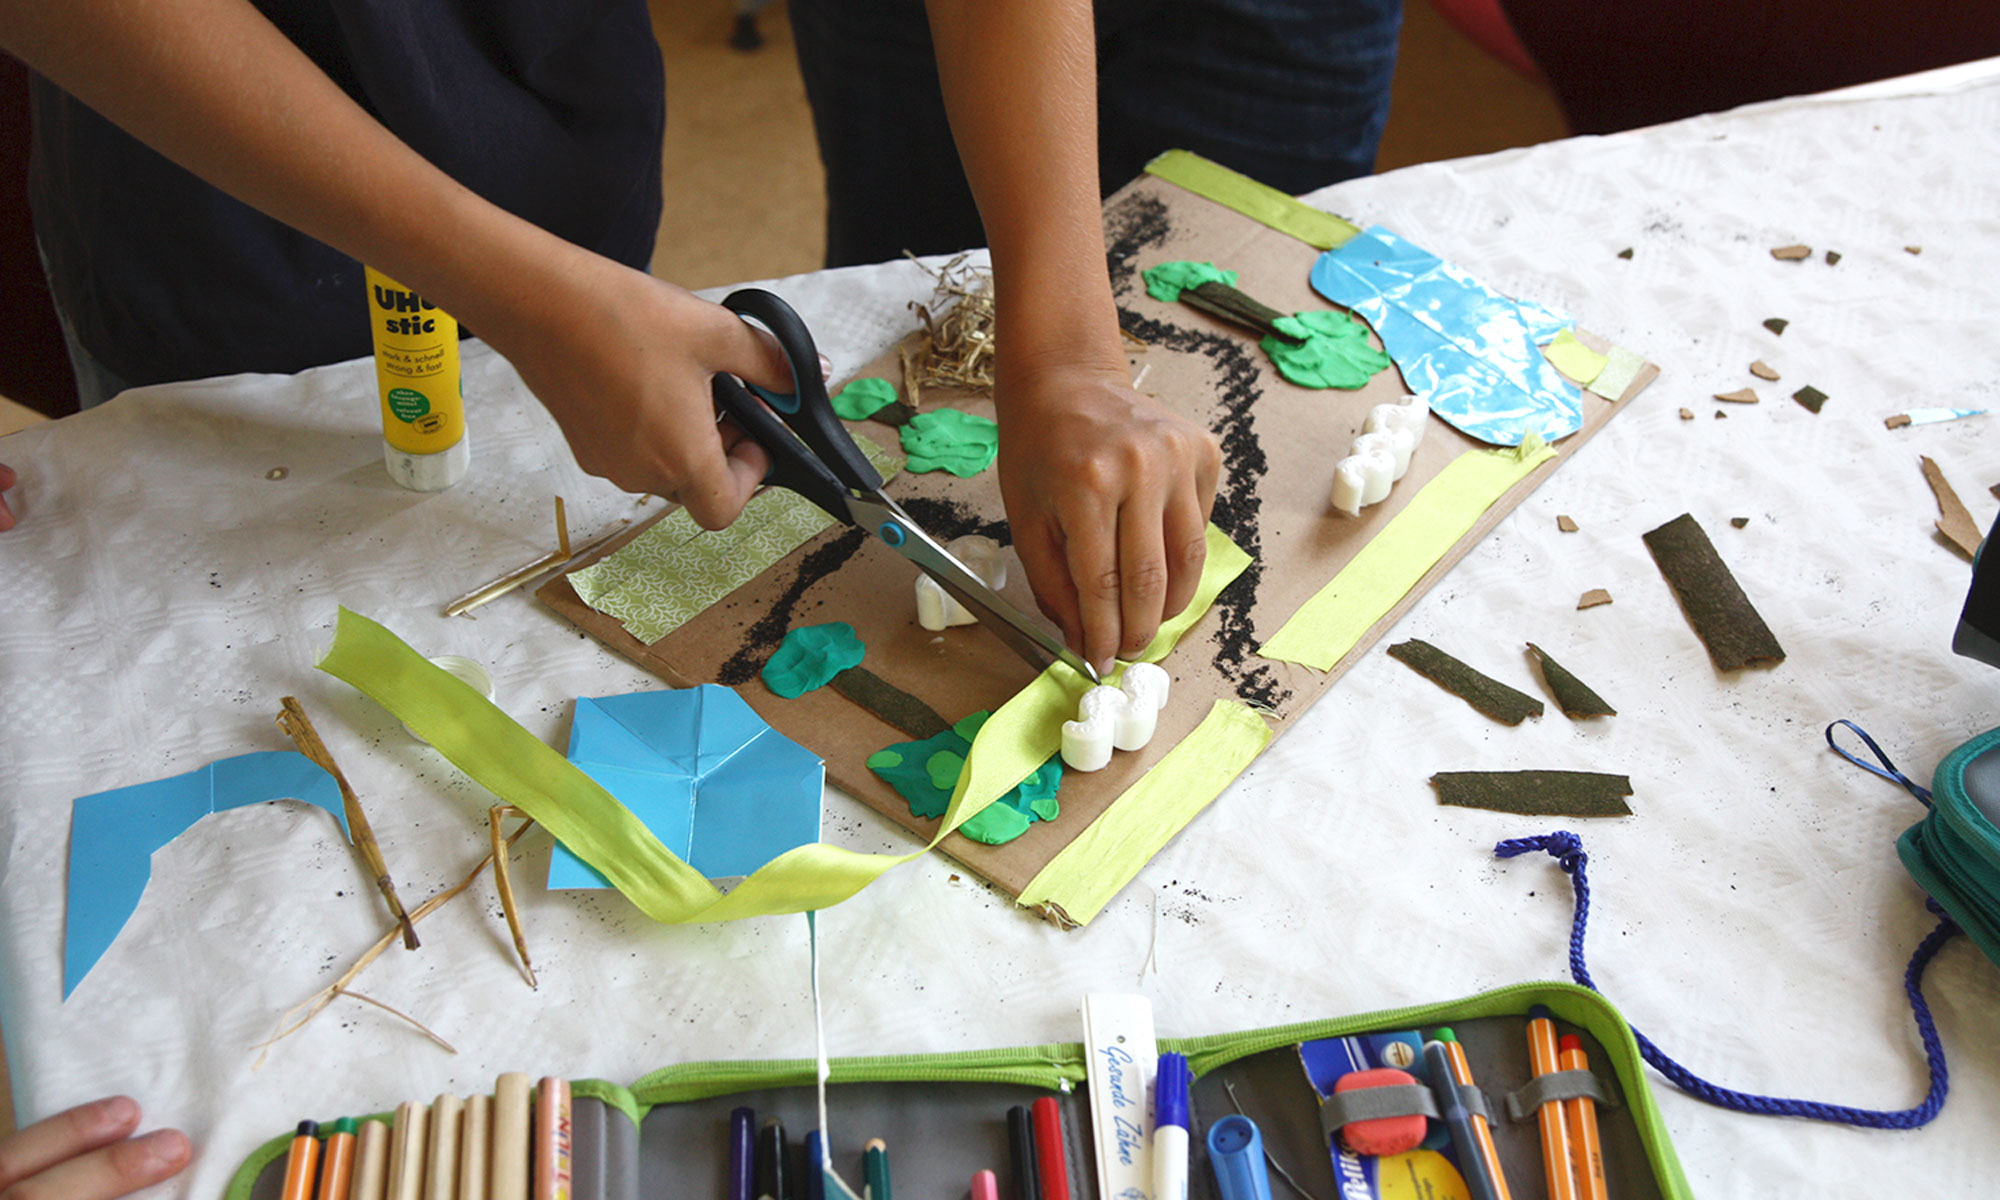 Materialbild aus Knete, Styropor, Bändern, Stroh und anderen Materialien, bearbeitet durch zwei Kinderhände